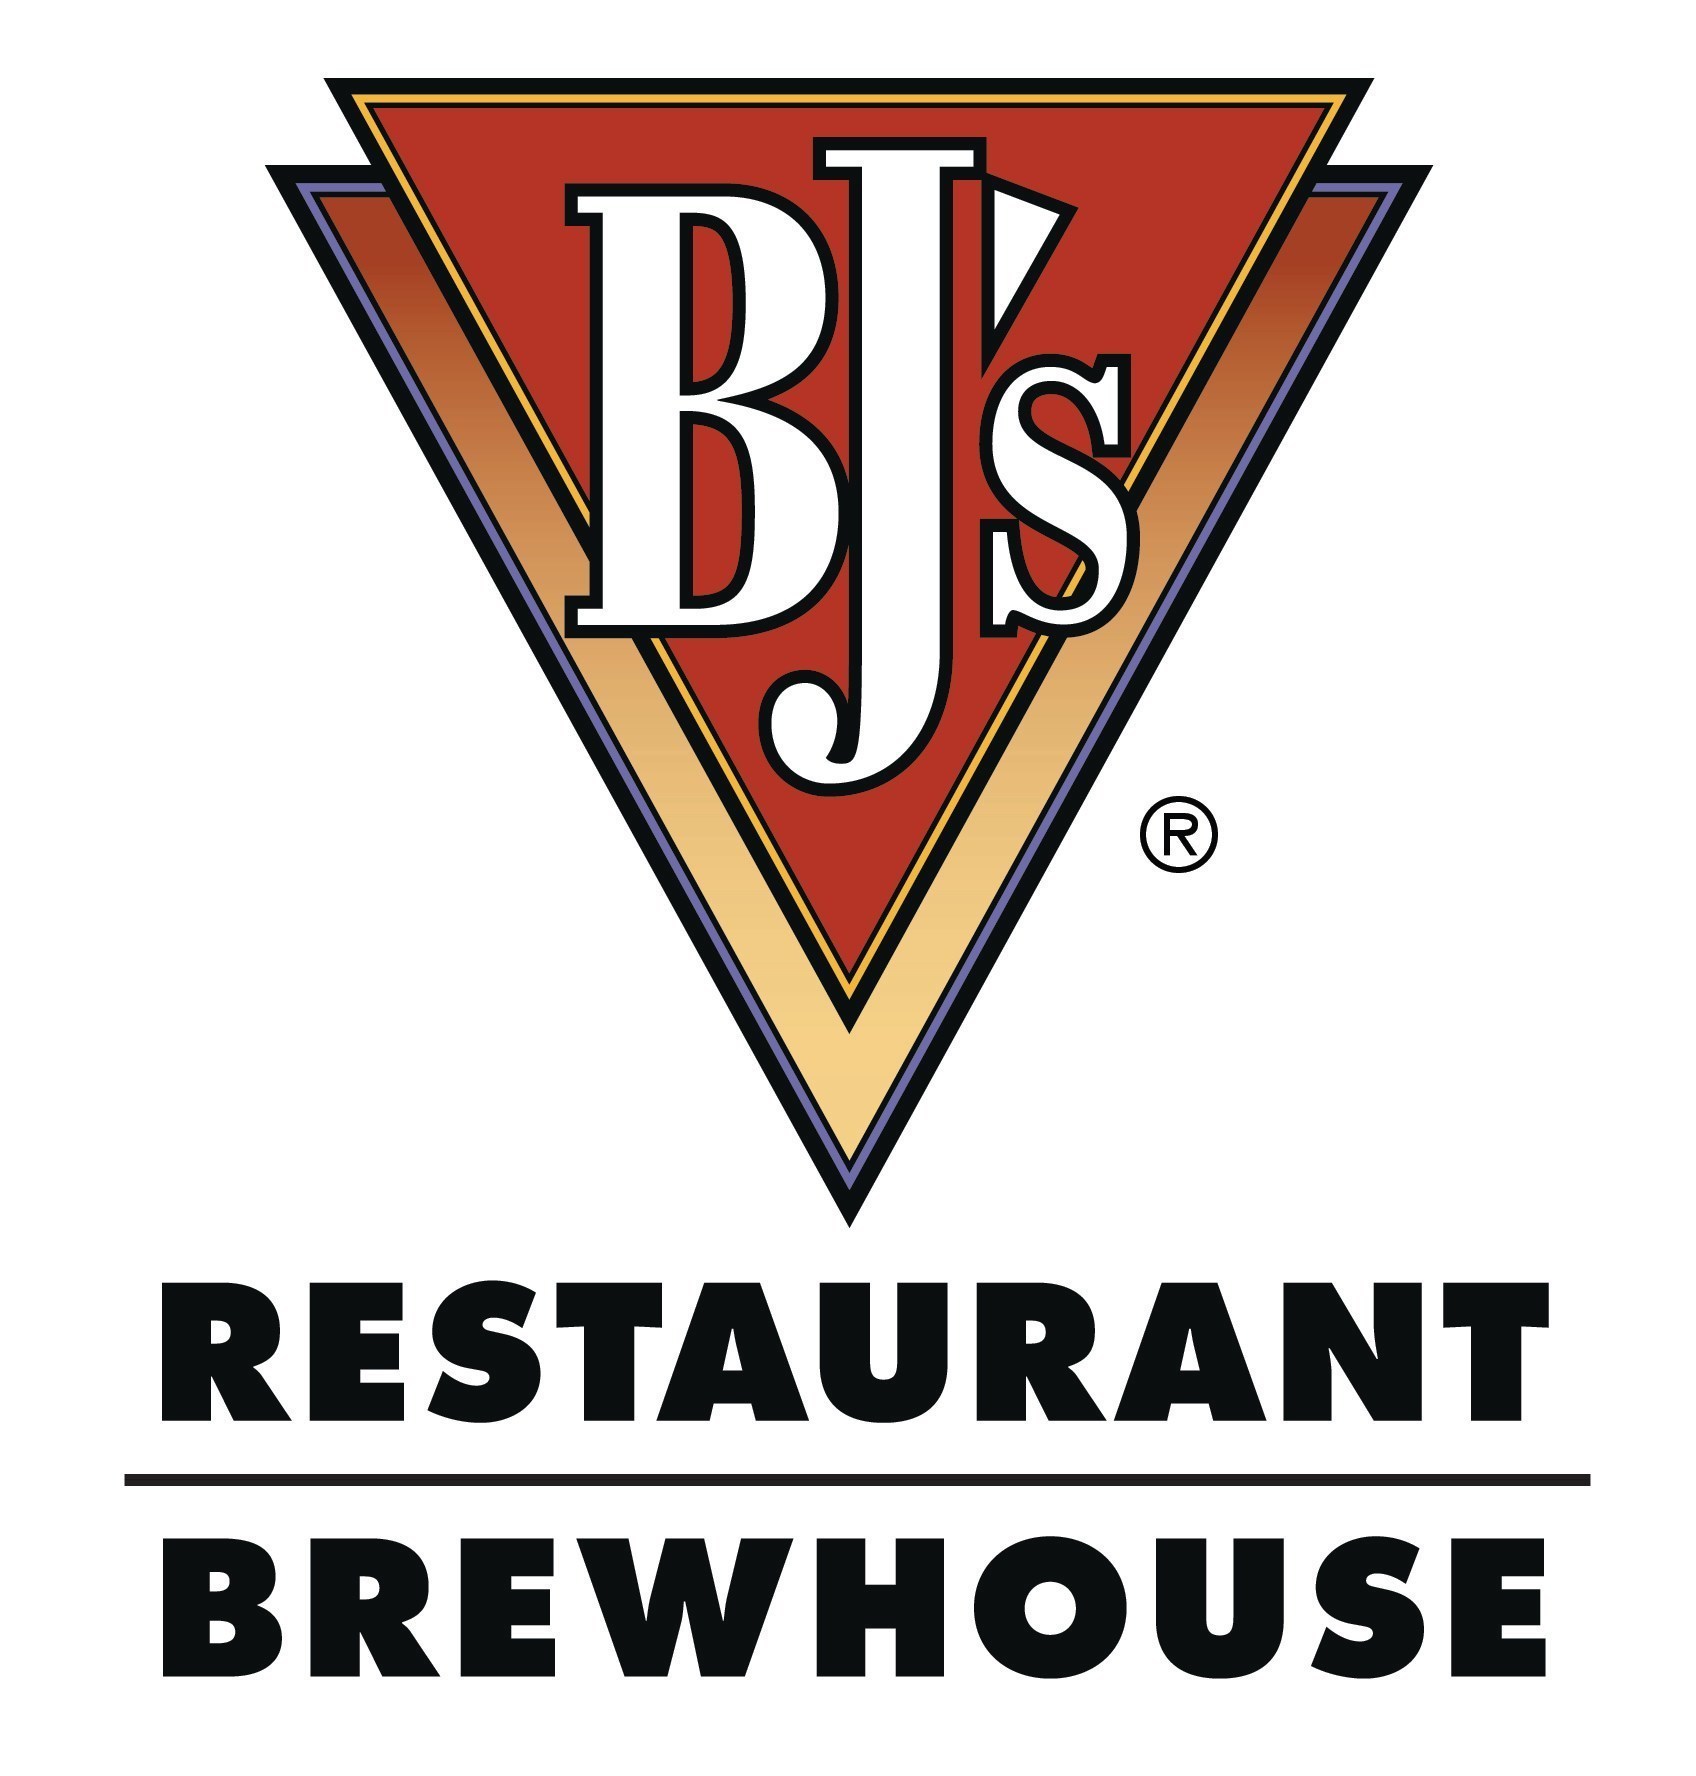 BJs restaurant